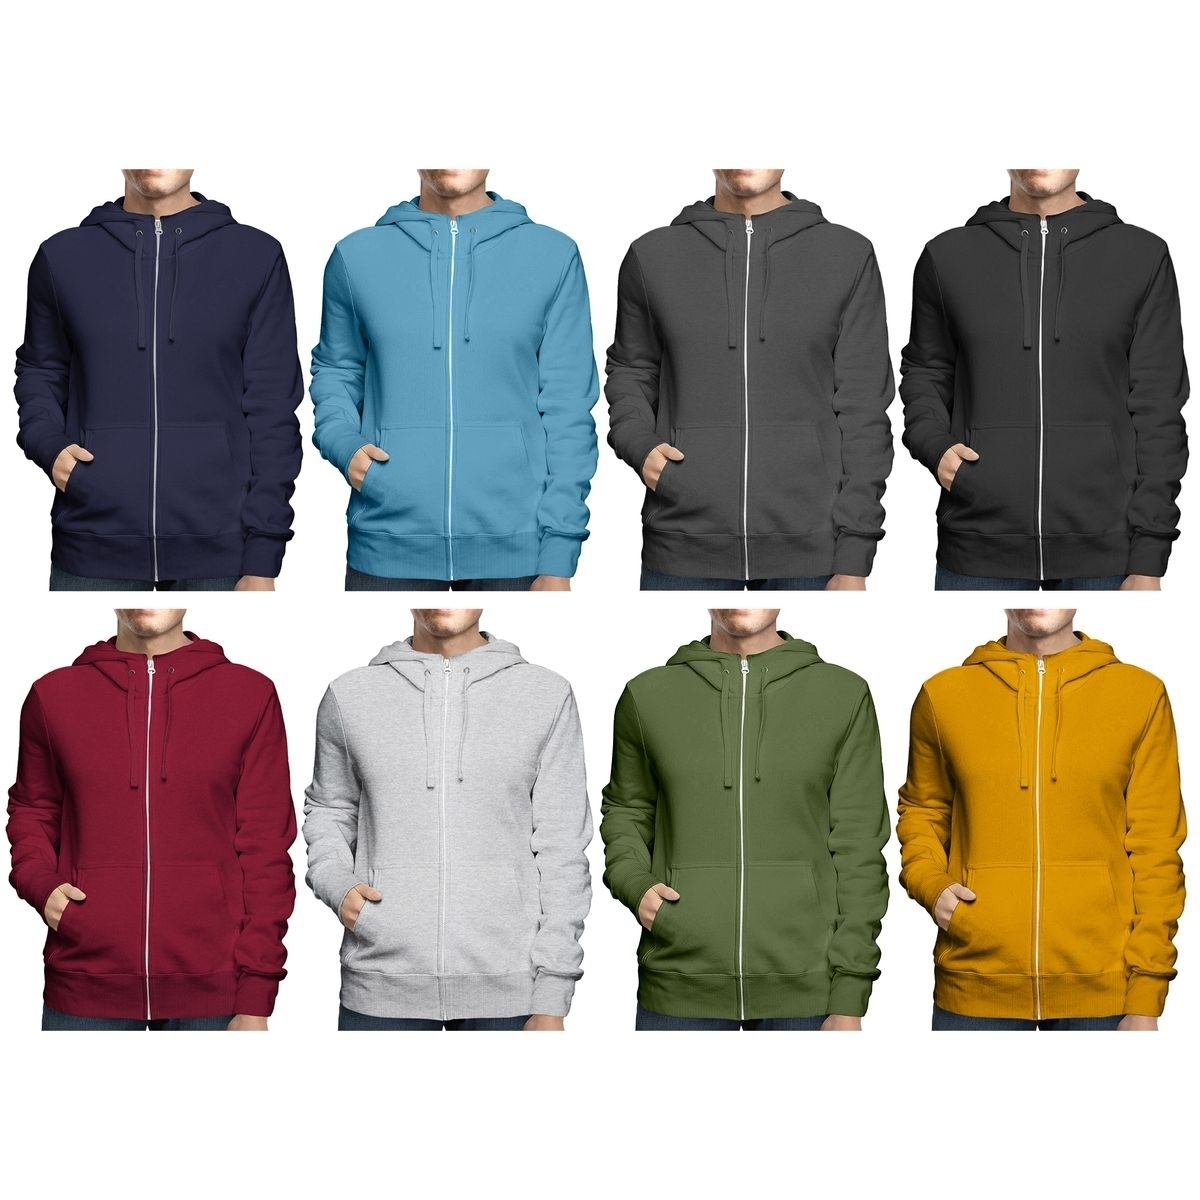 2-Pack: Men's Winter Warm Soft Cozy Full Zip-Up Fleece Lined Hoodie Sweatshirt - 4X